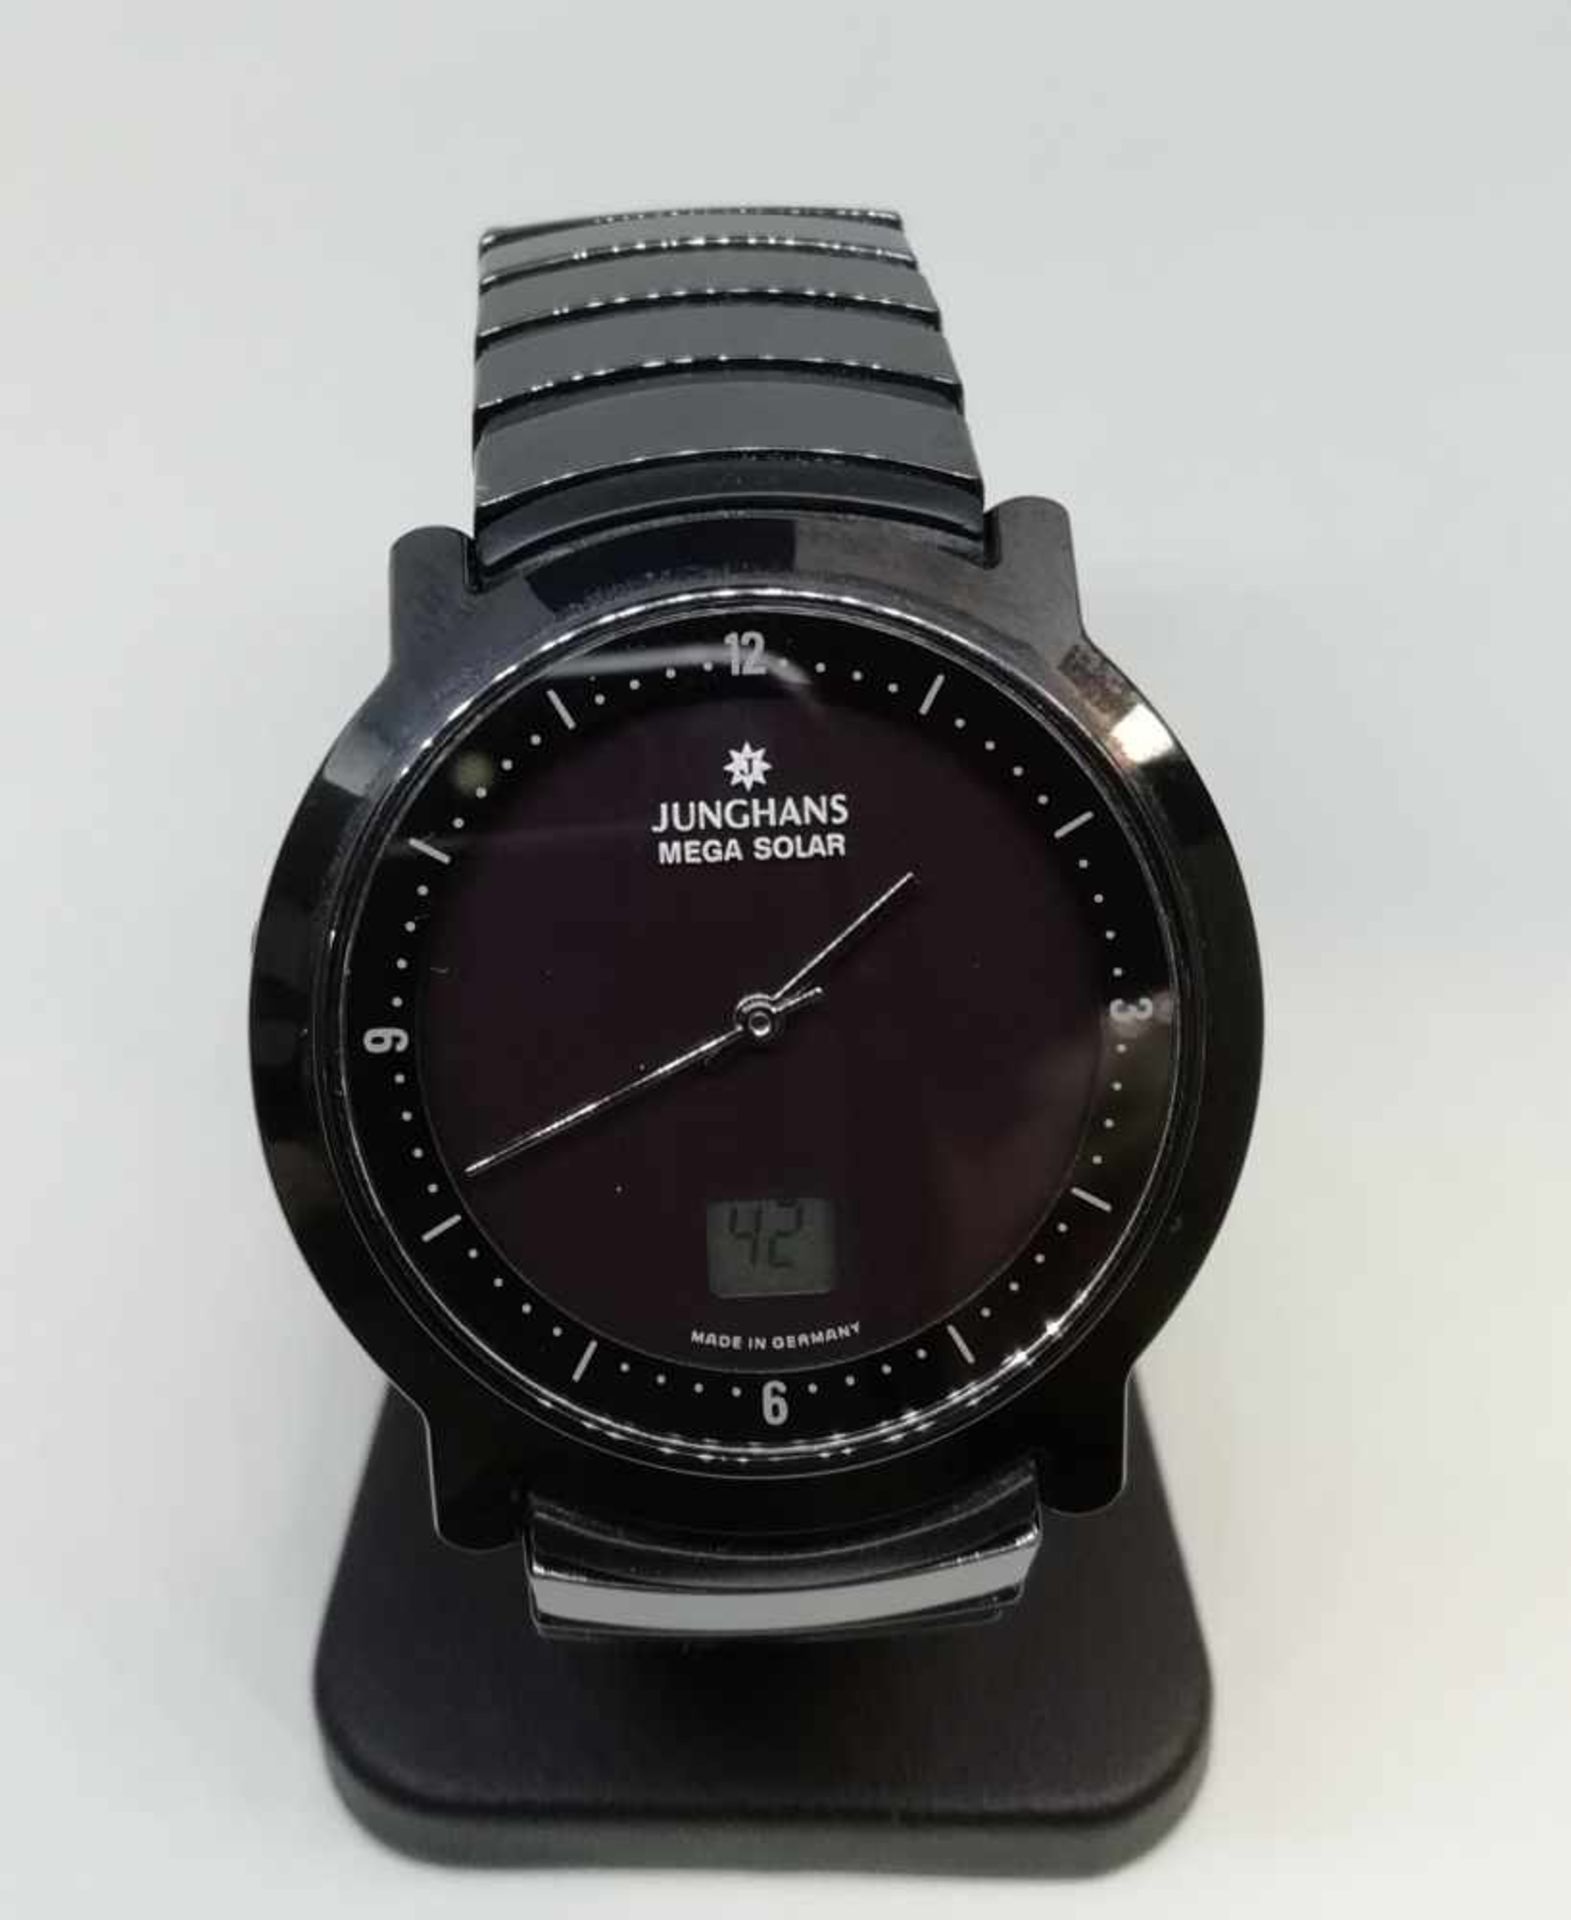 Armbanduhr "Junghans"Mega Solar, Zifernblatt schwarz, Funkuhr, 73,3g, gebraucht, keine Gewähr auf